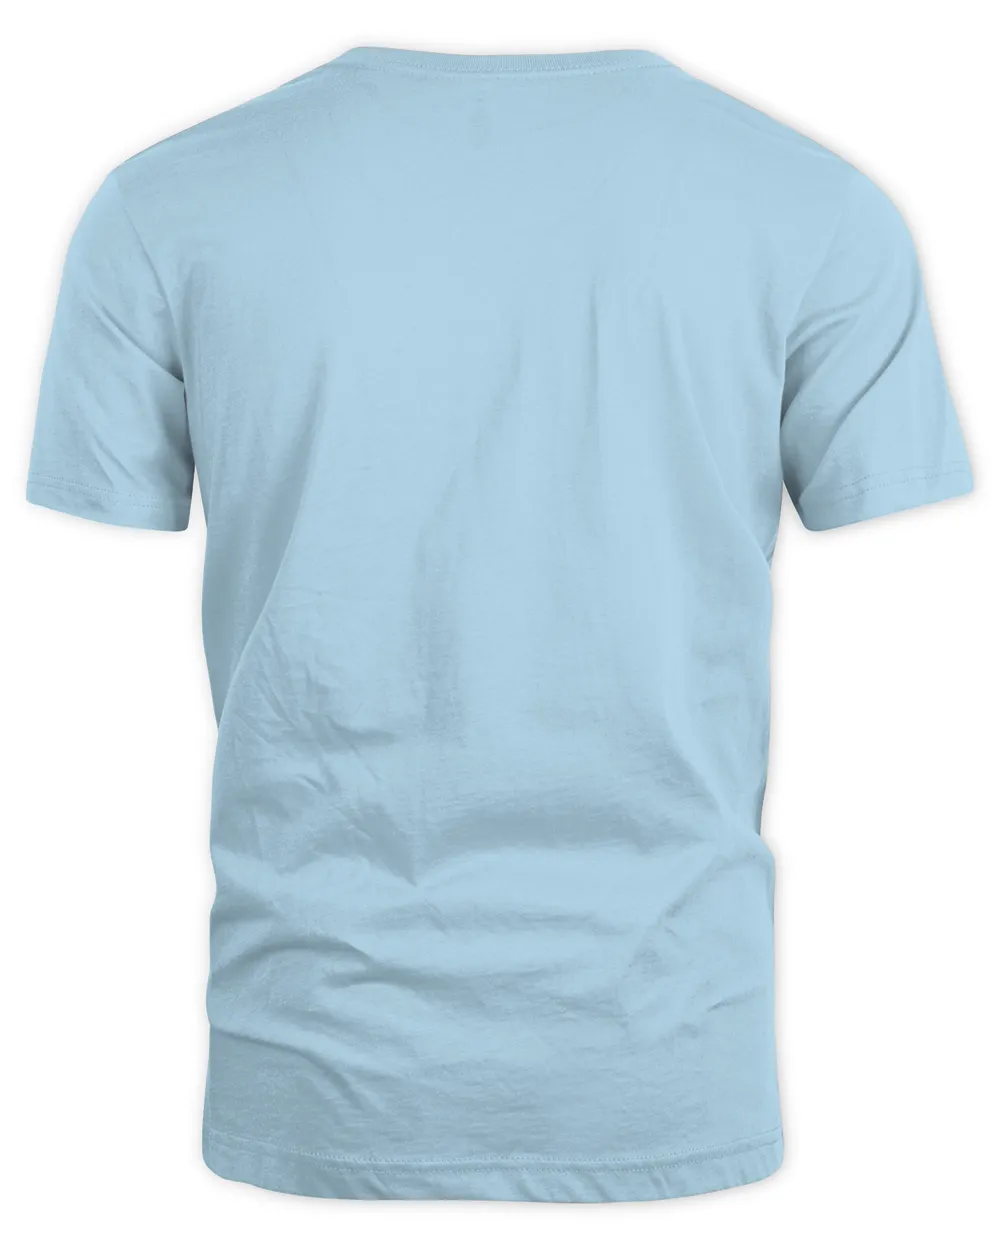 Self-Titled T-Shirt